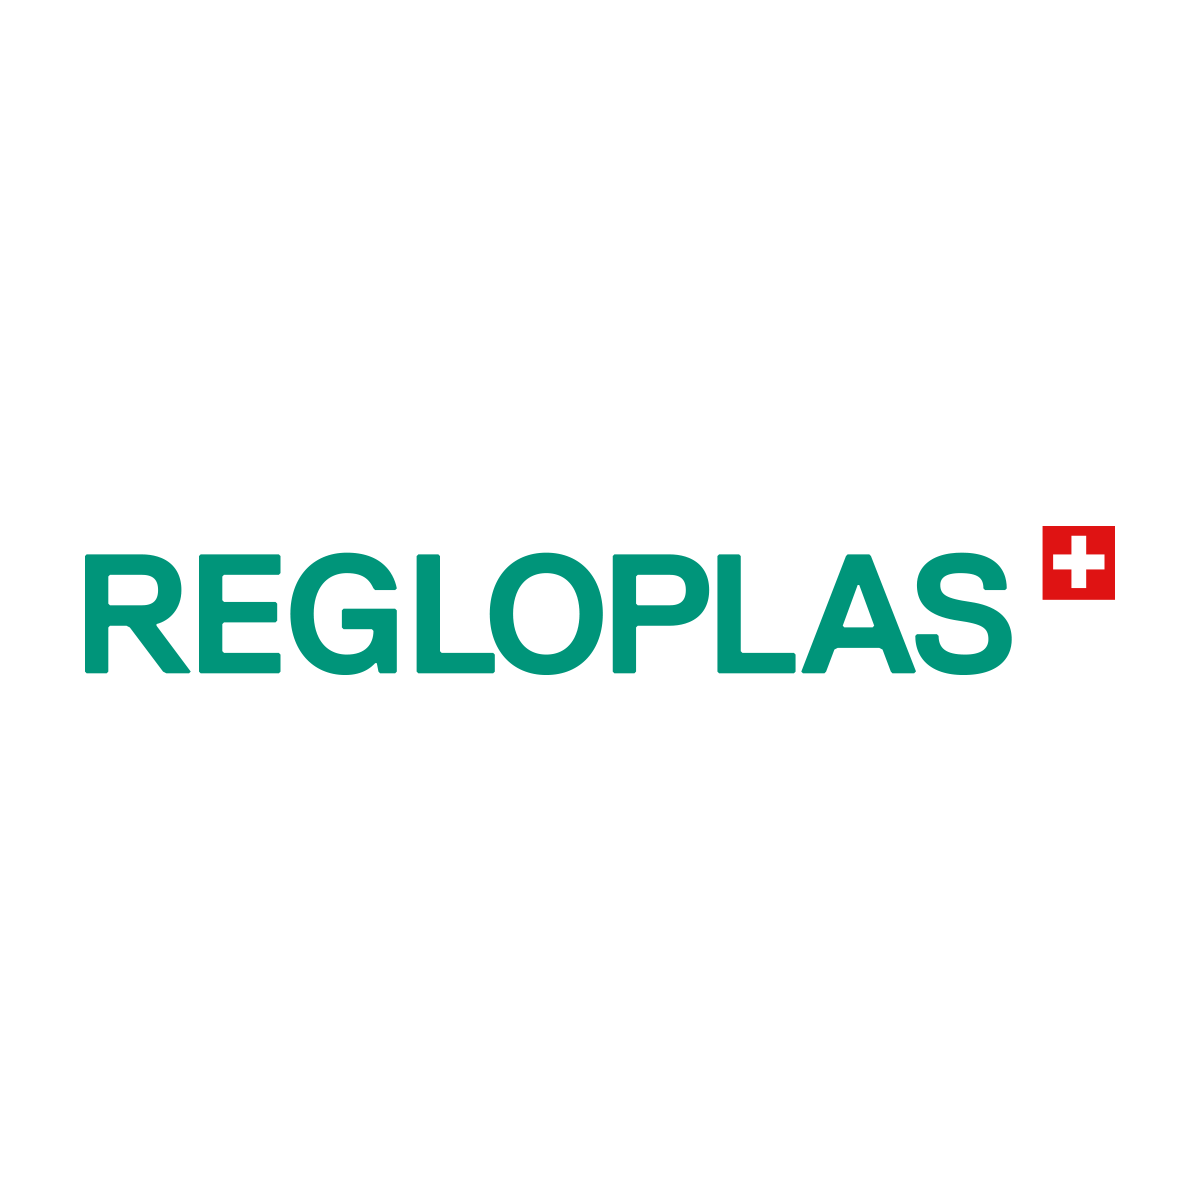 Regloplas Corp